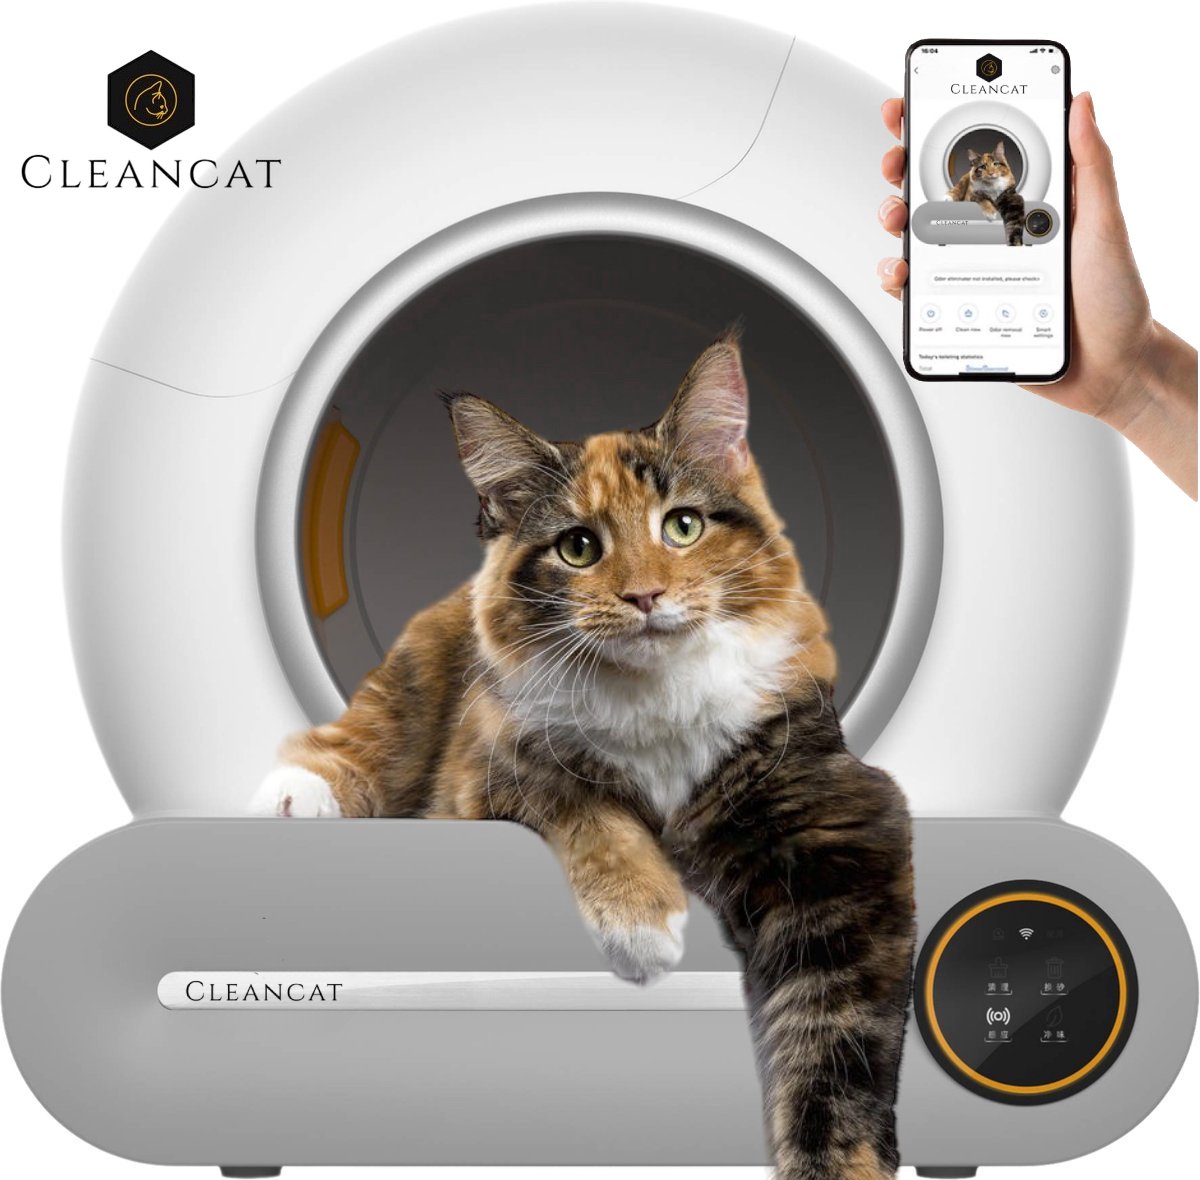 CleanCat© - Automatische Kattenbak - XXL - Zelfreinigende Kattenbak - Inclusief Kattenbakmat en 4 Rollen Opvangzakjes - Met App en Touchscreen - 65L - Geschikt voor grote katten - Cleancat